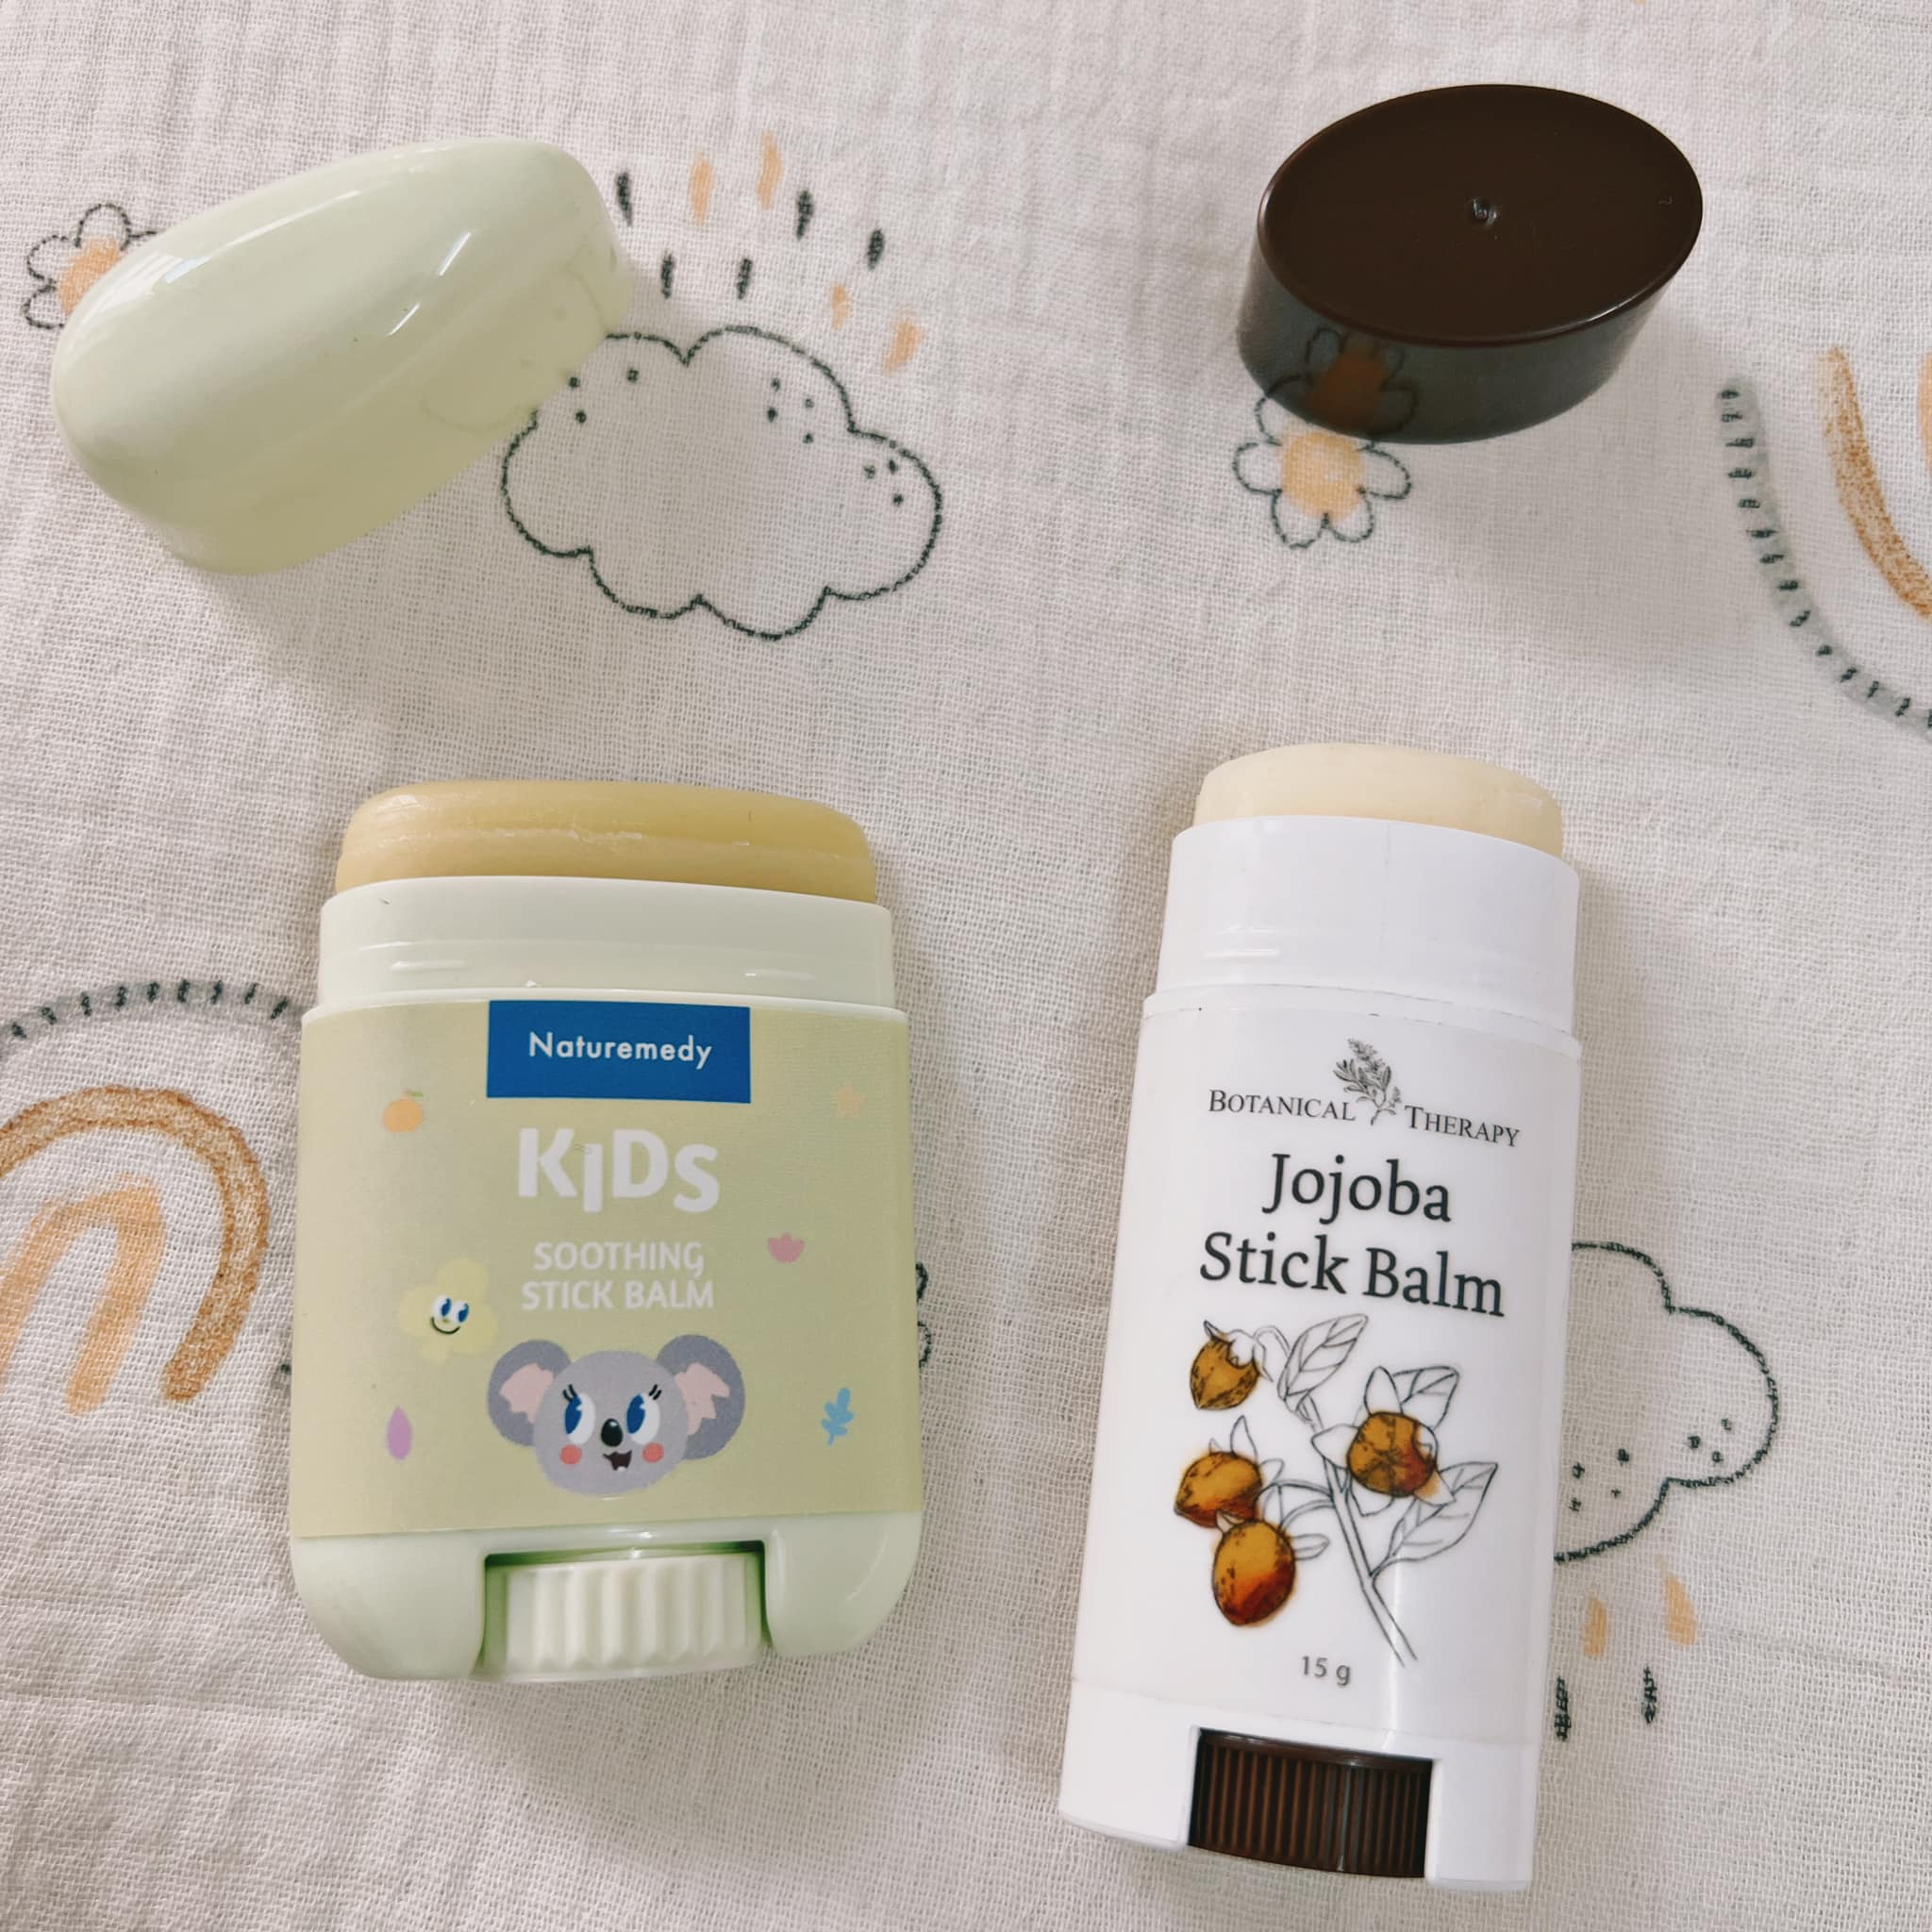 Admin nhóm Review Bỉm Sữa Official chia sẻ 4 loại kem bôi nẻ dành cho bé, có thể dùng quanh năm bất kể thời tiết nào - Ảnh 1.